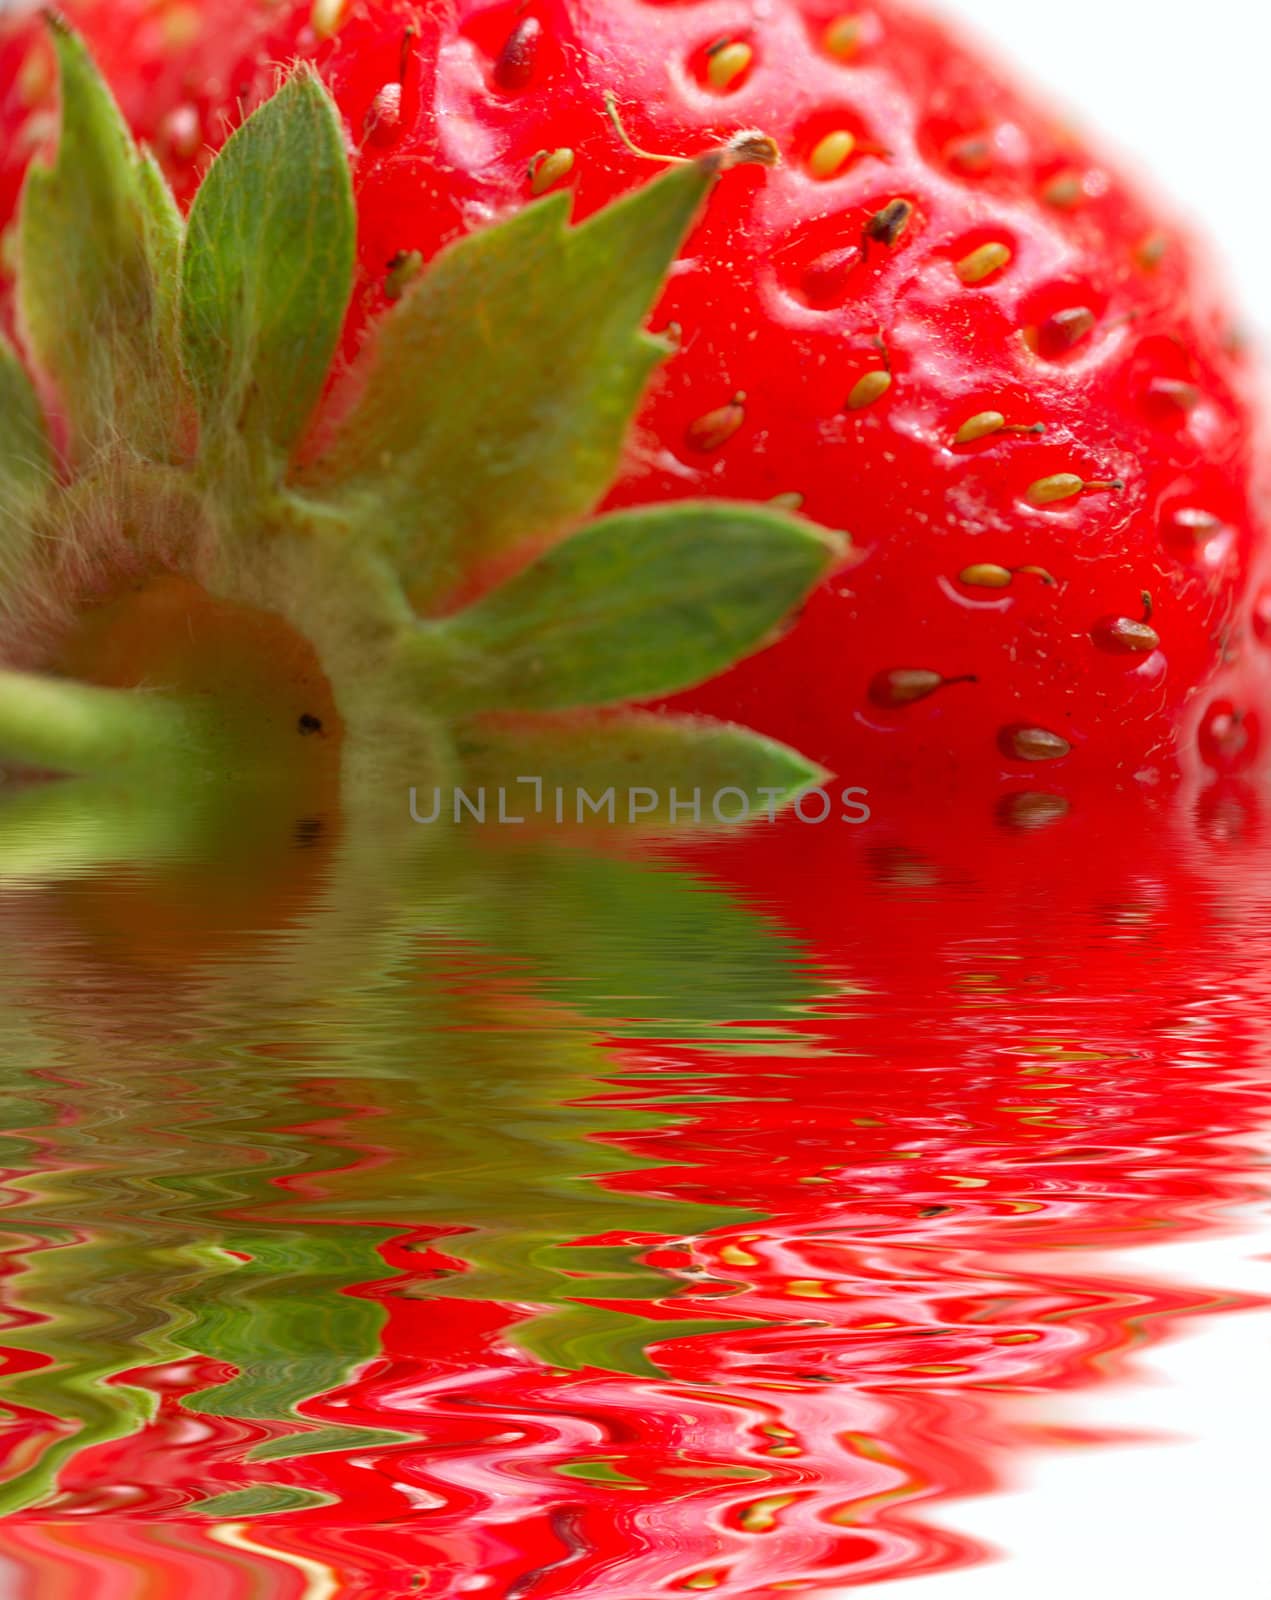 macro of strawberry by mettus